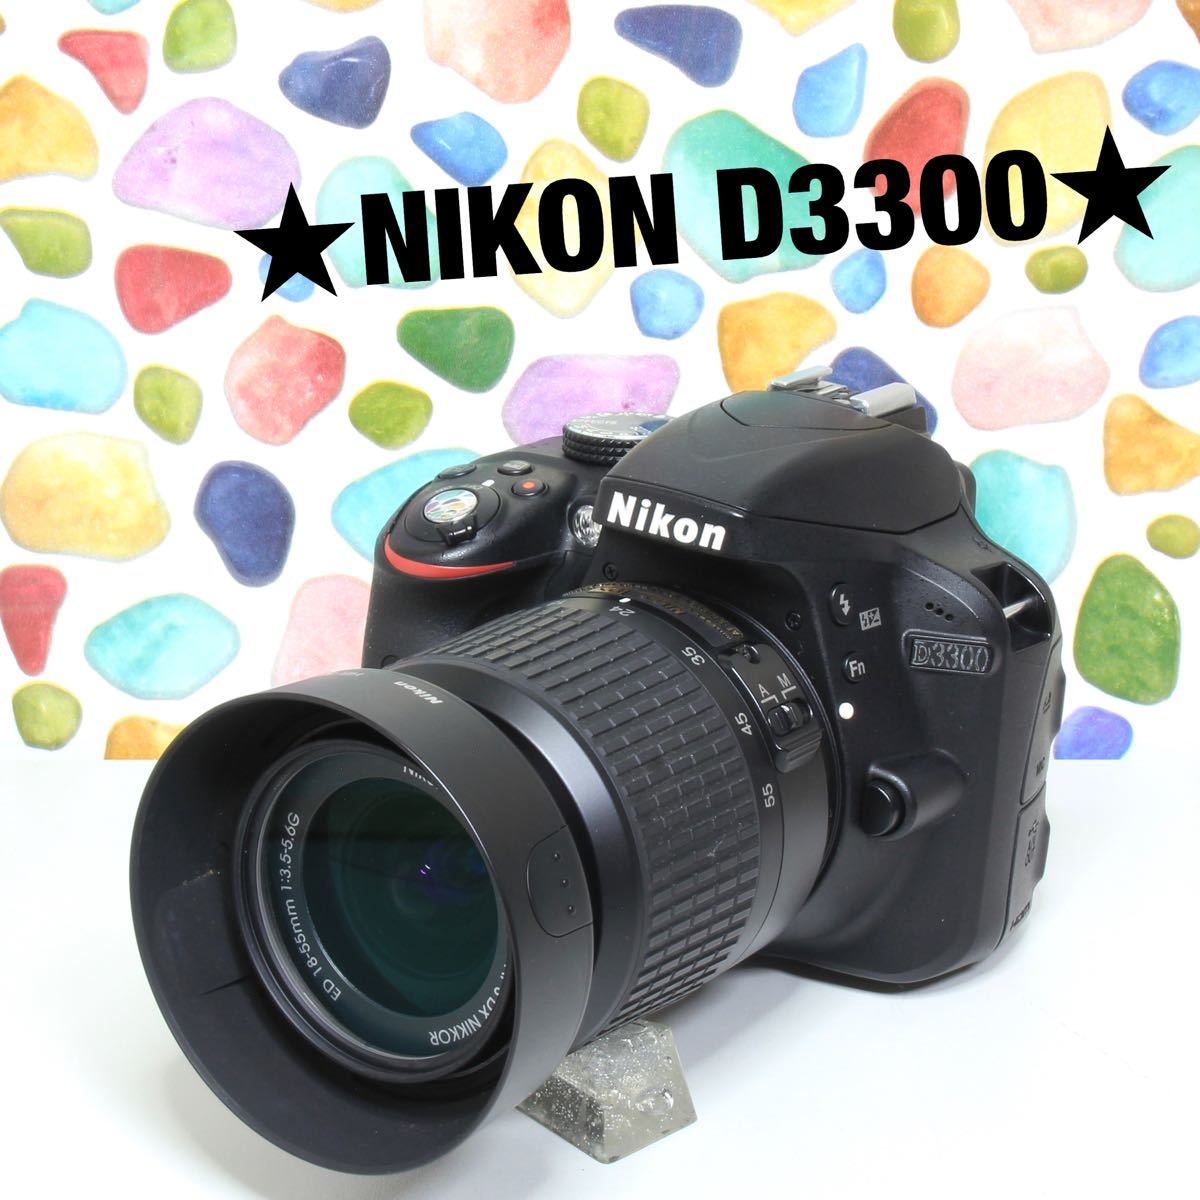 ◇NIKON ニコン D3300 ◇このカメラなら間違いありません！ ◇Wi-Fi